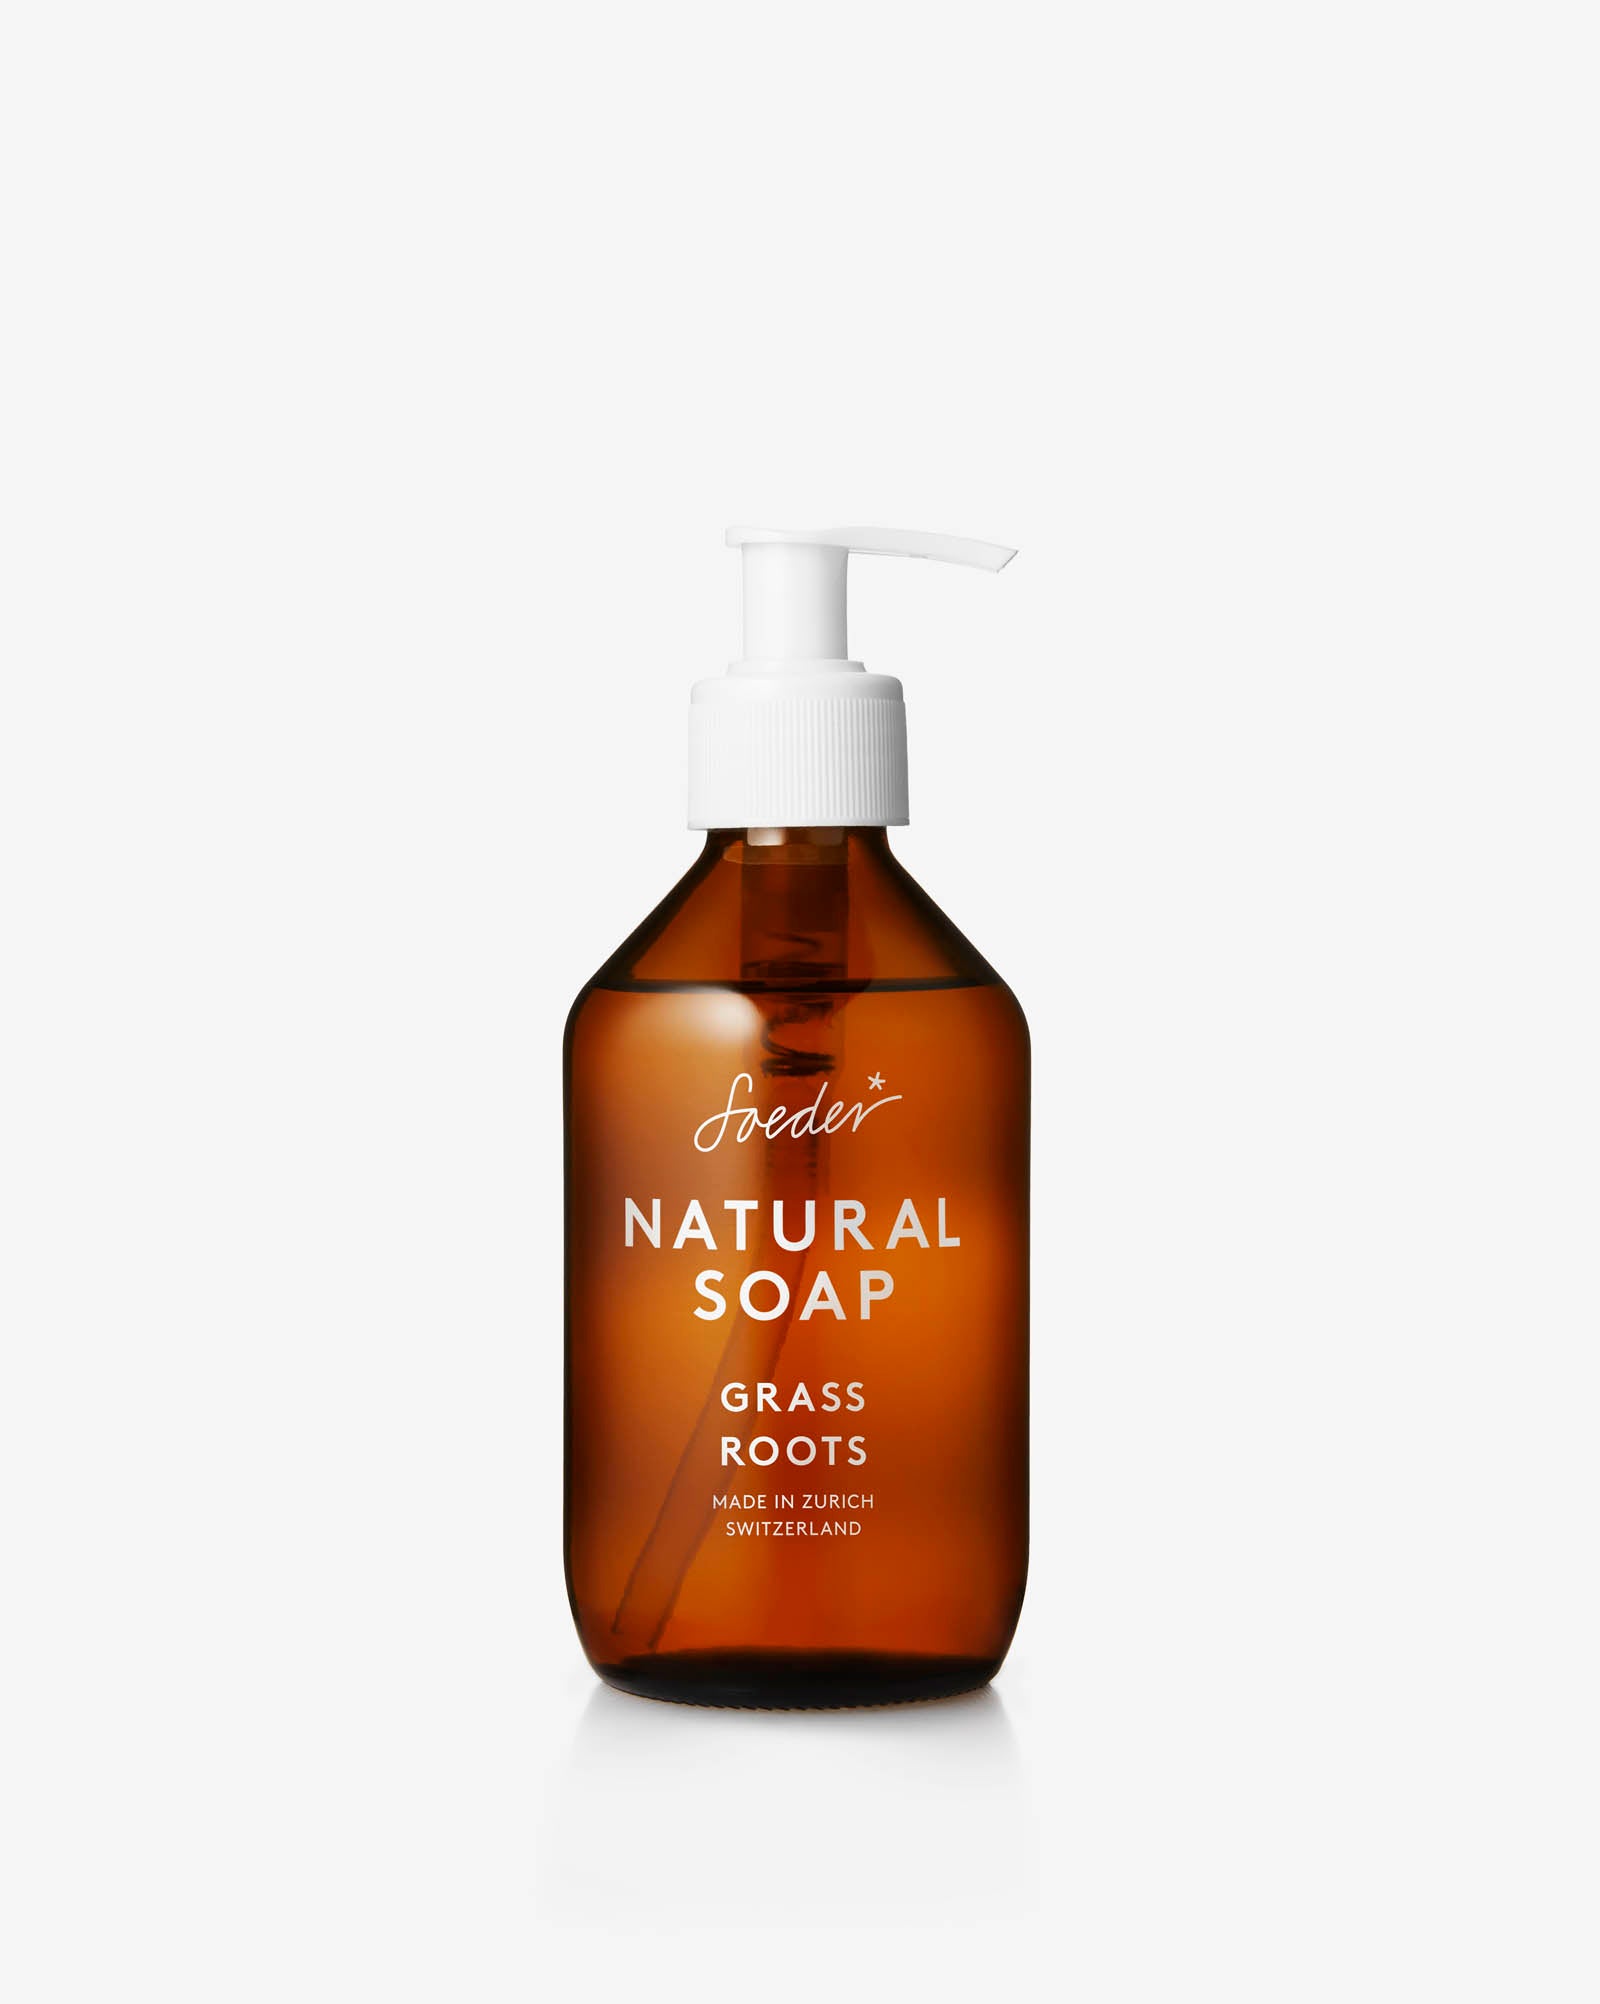 NATURAL SOAP 250ML - Soeder*